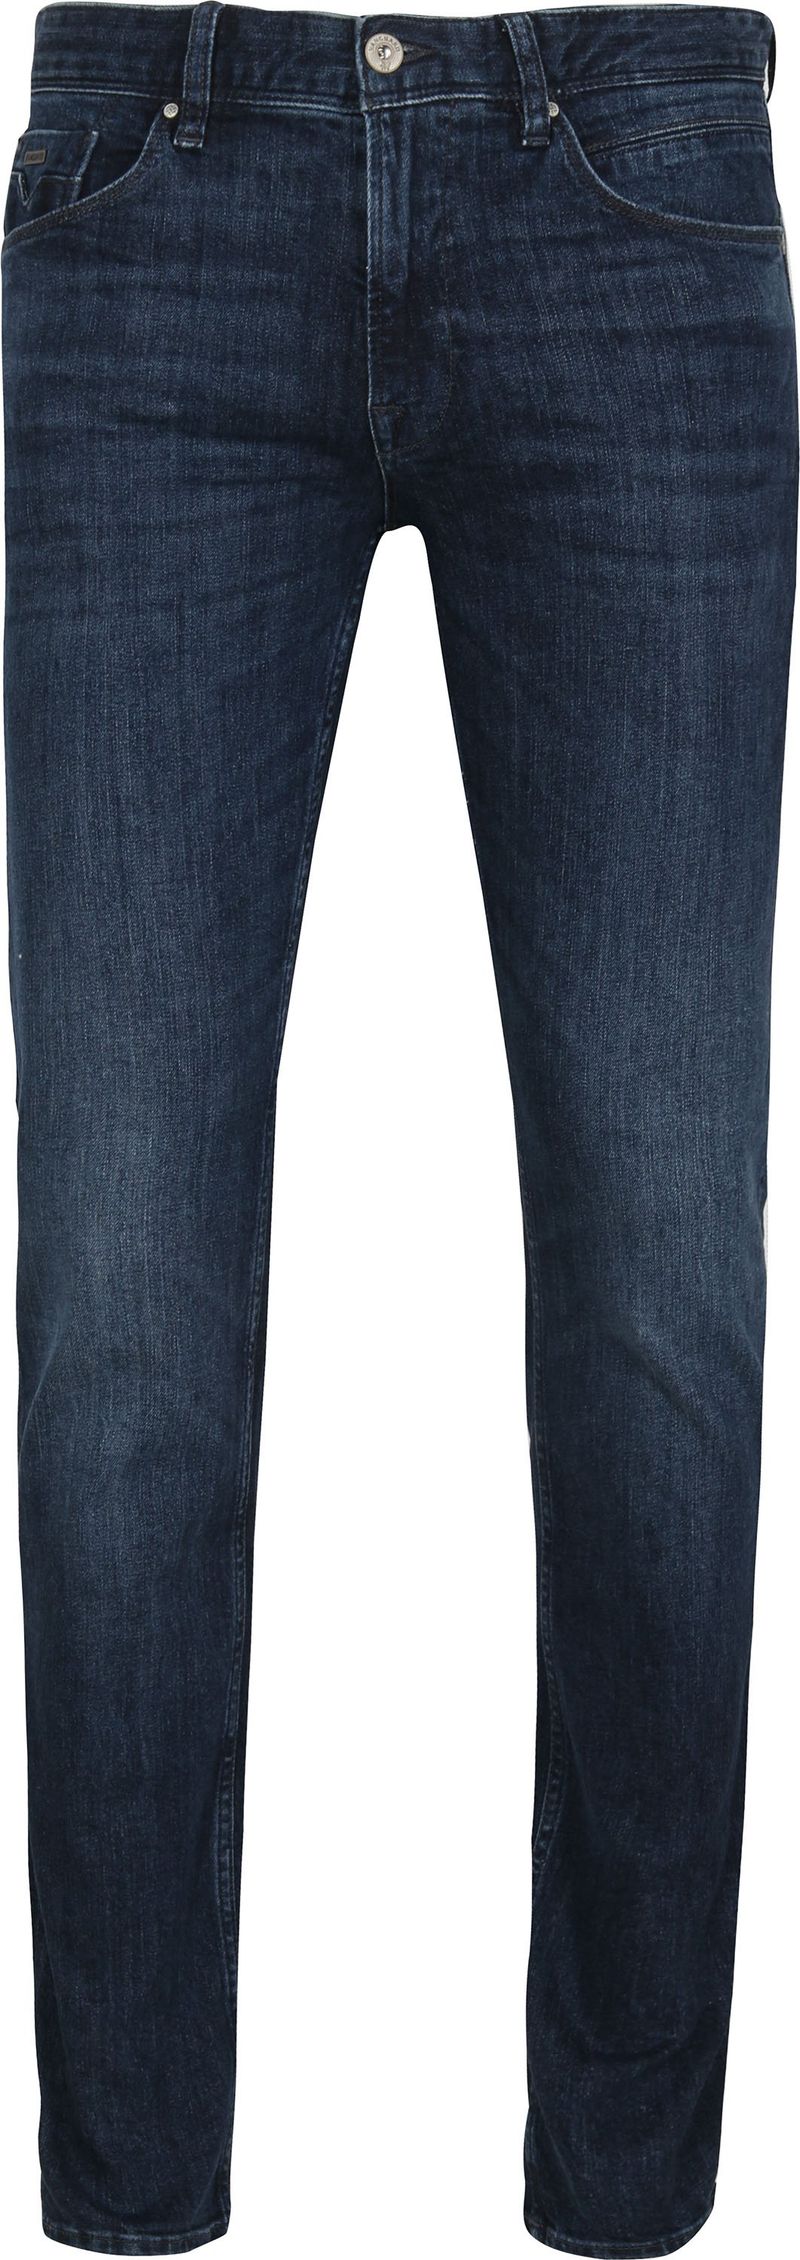 Vanguard Jeans V7 Rider Steel Washed Blau - Größe W 33 - L 36 günstig online kaufen